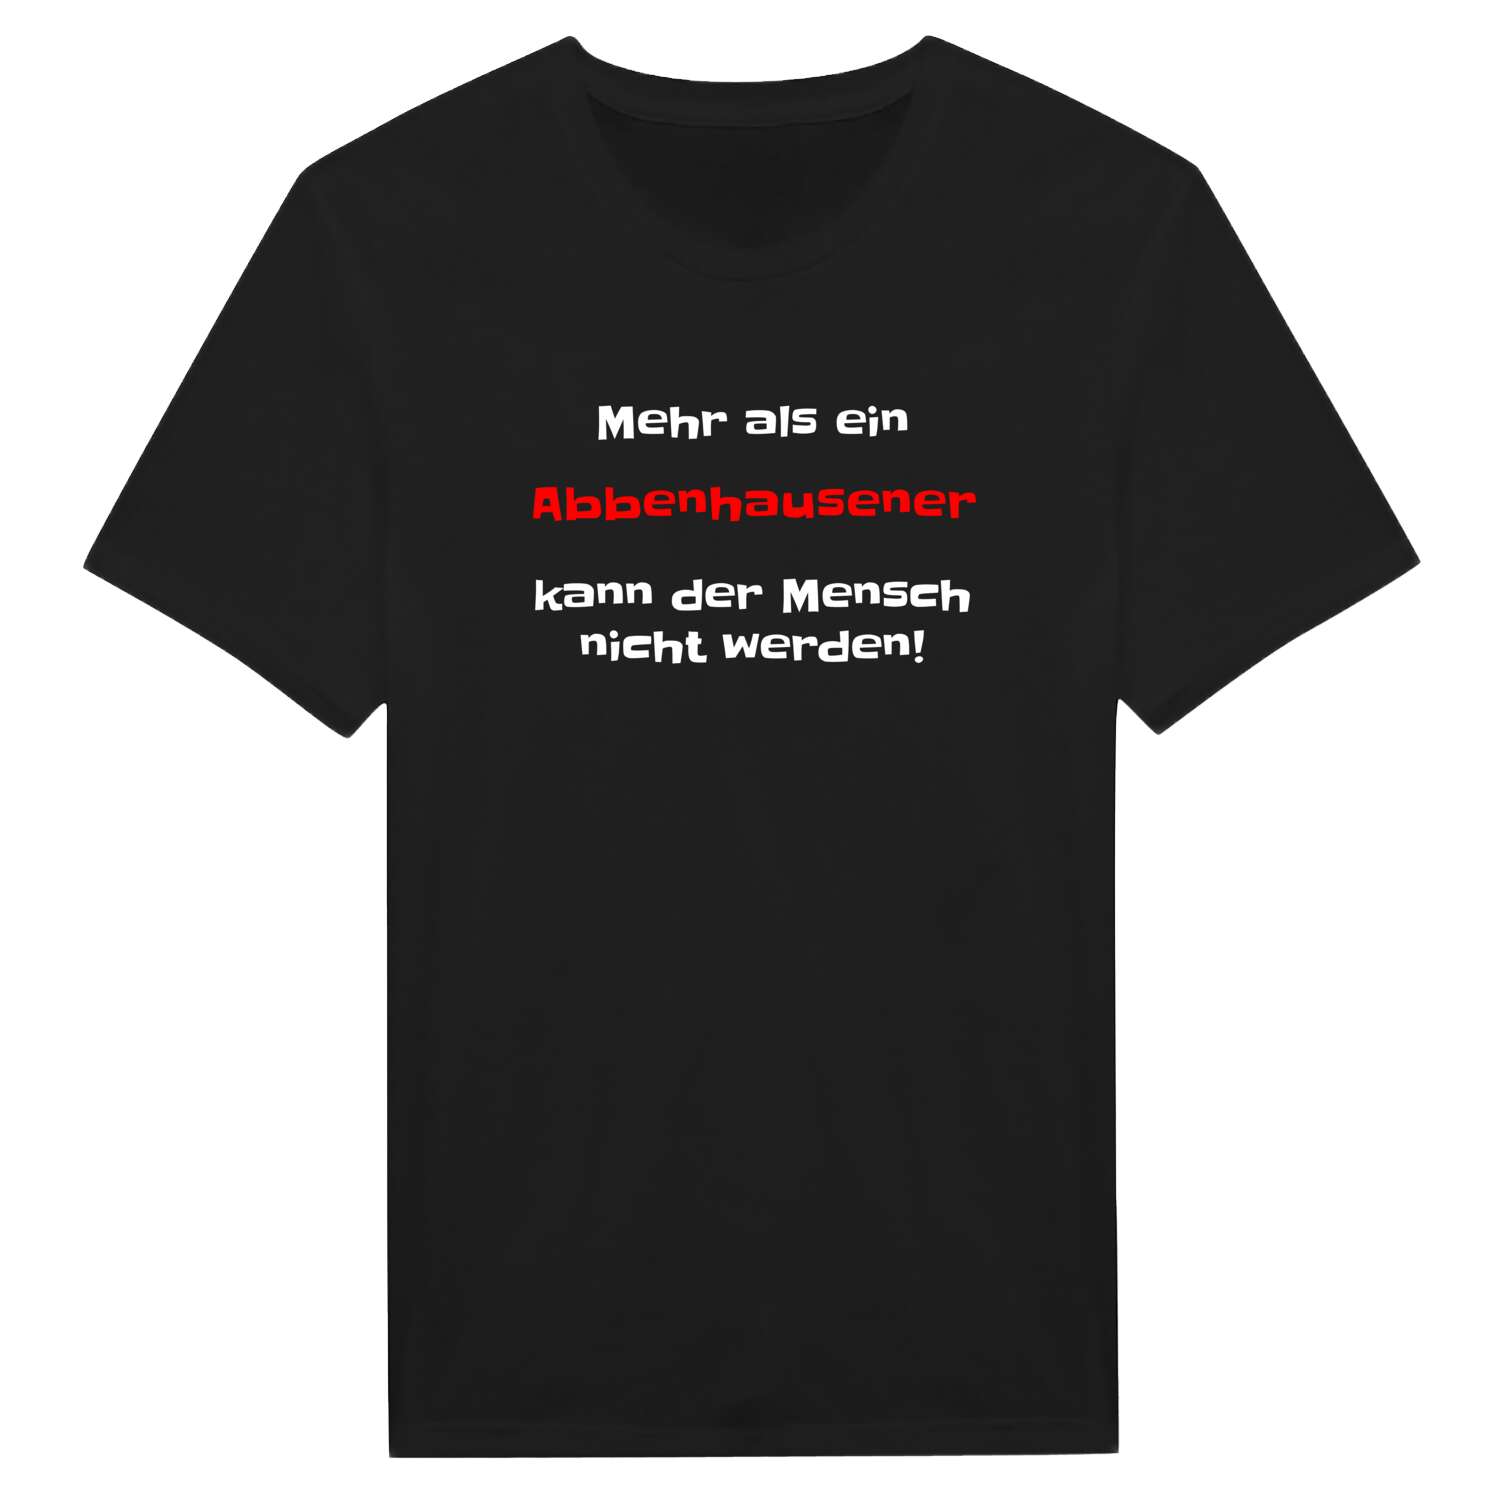 Abbenhausen T-Shirt »Mehr als ein«